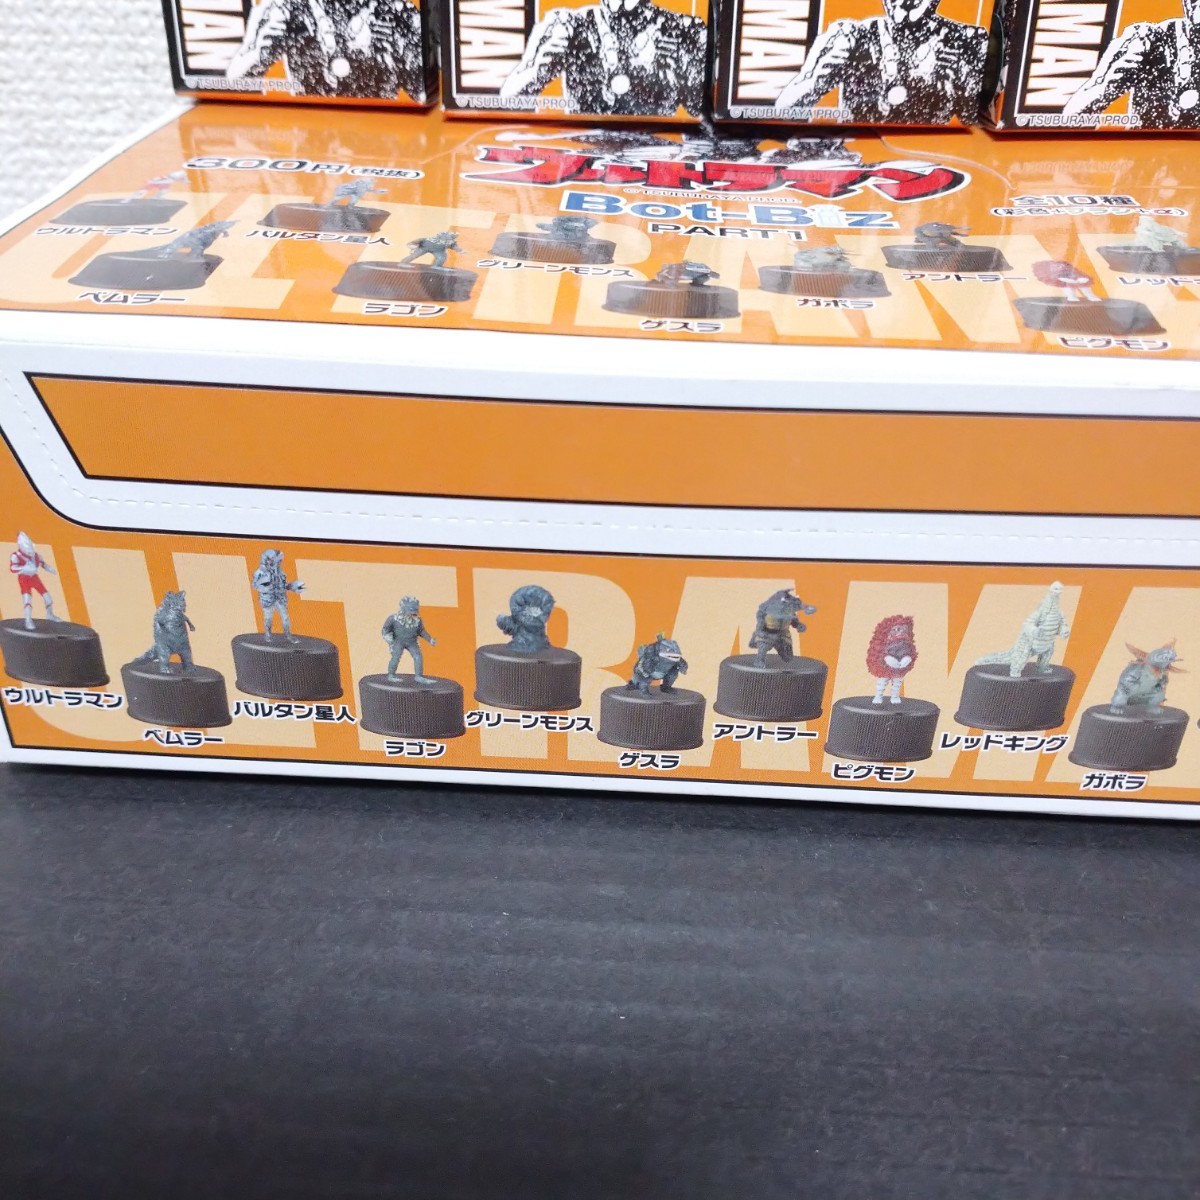  Ultraman Bot-Biz PART1 ( stock )lana all 10 kind outer box 